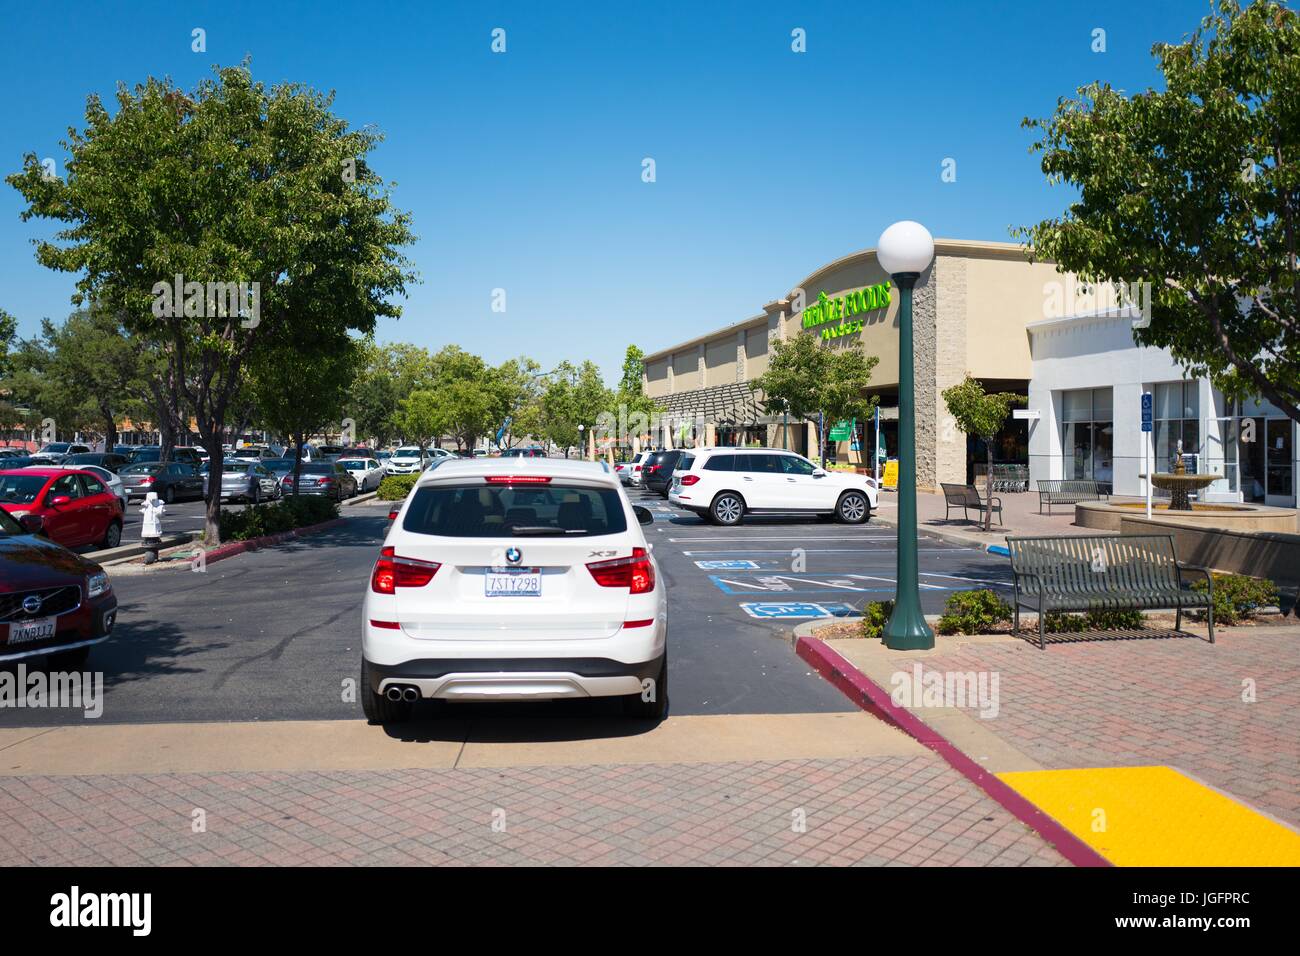 Un SUV BMW s'arrête à l'épicerie Whole Foods Market à San Ramon, Californie, le 21 juin 2017. En juin 2017, Amazon.com a annoncé qu'elle ferait l'acquisition de la chaîne d'épicerie haut de gamme. Banque D'Images